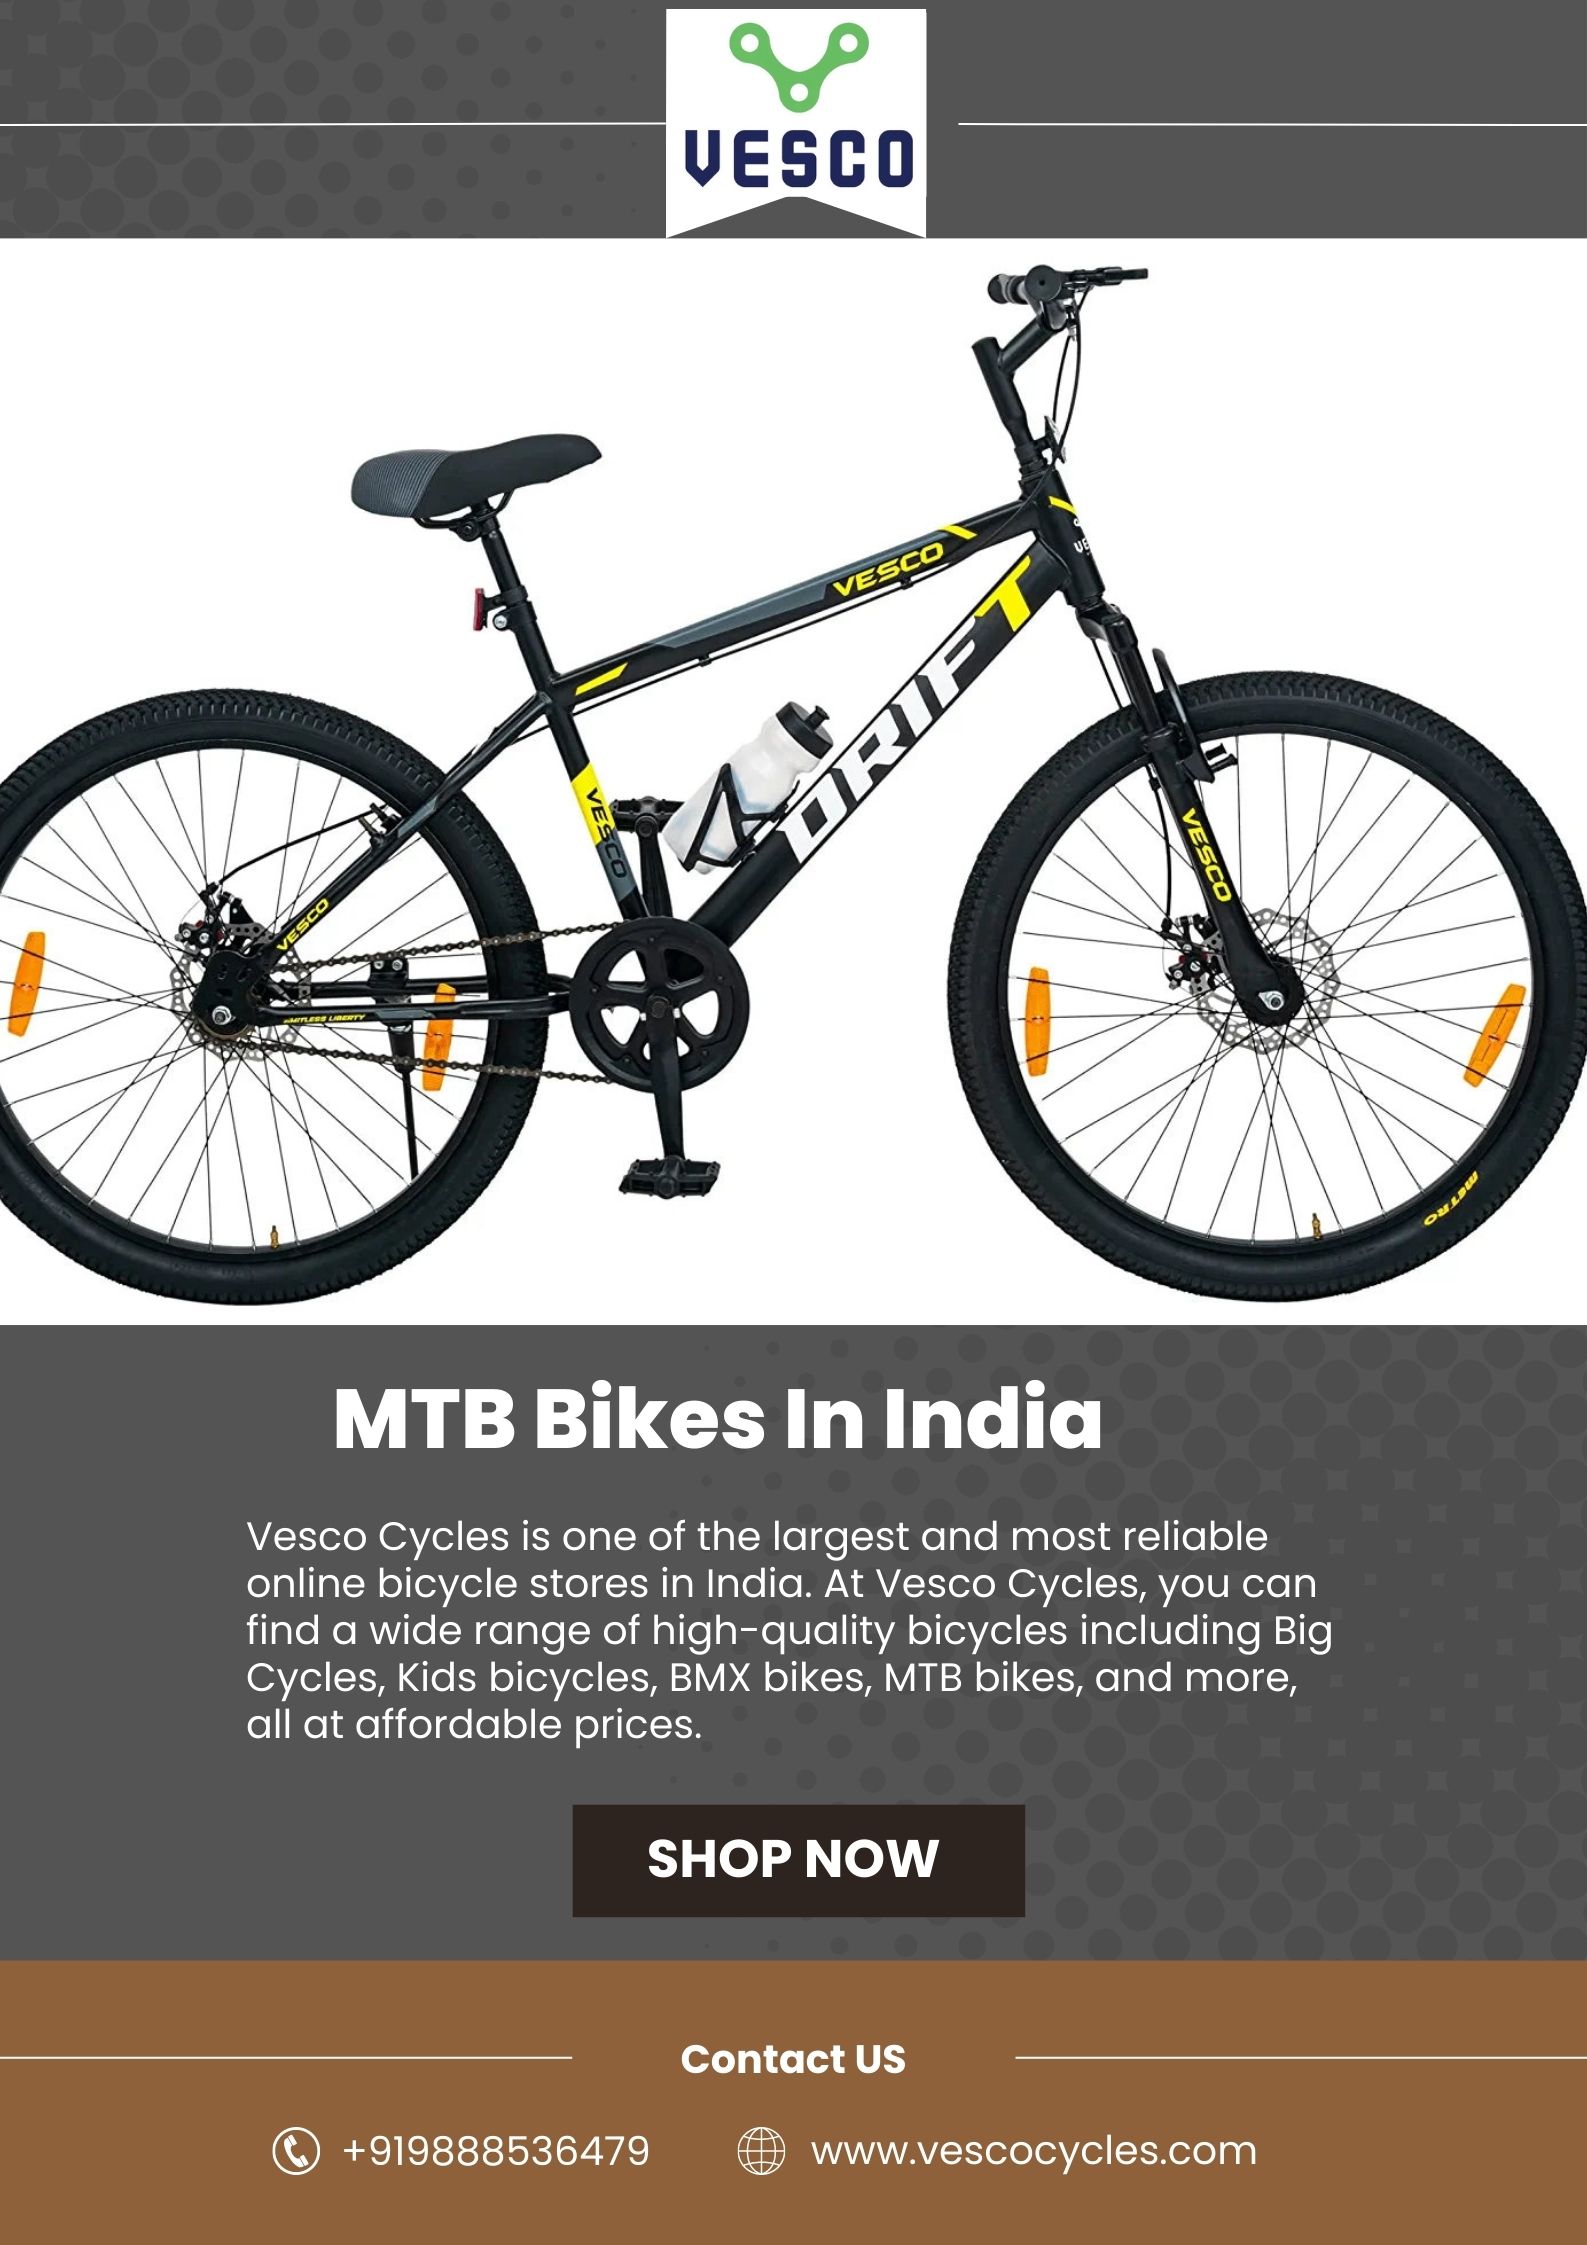 MTB Bikes in India